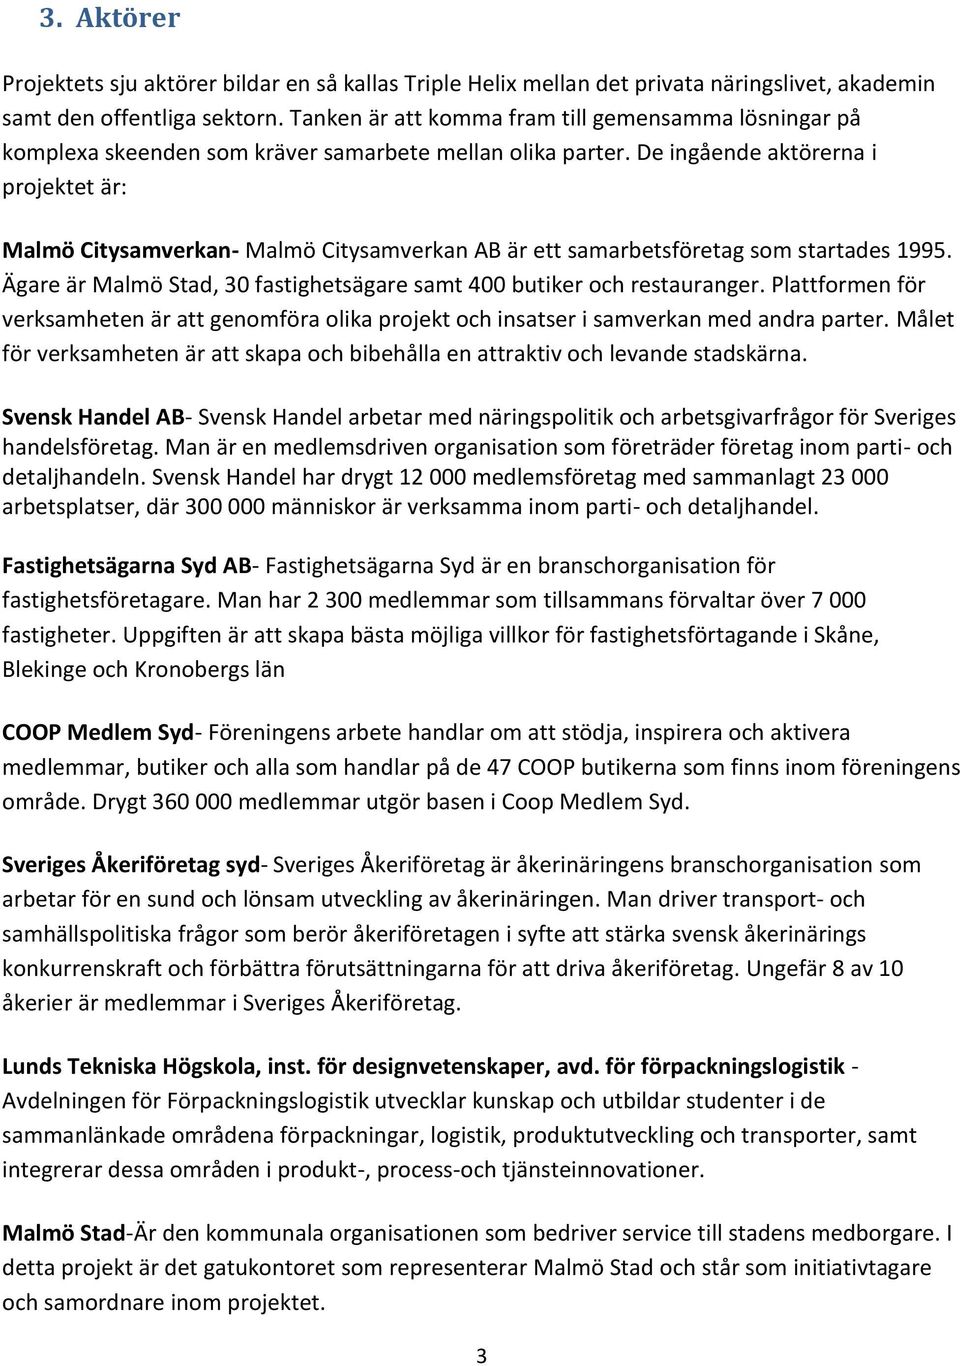 De ingående aktörerna i projektet är: Malmö Citysamverkan- Malmö Citysamverkan AB är ett samarbetsföretag som startades 1995. Ägare är Malmö Stad, 30 fastighetsägare samt 400 butiker och restauranger.